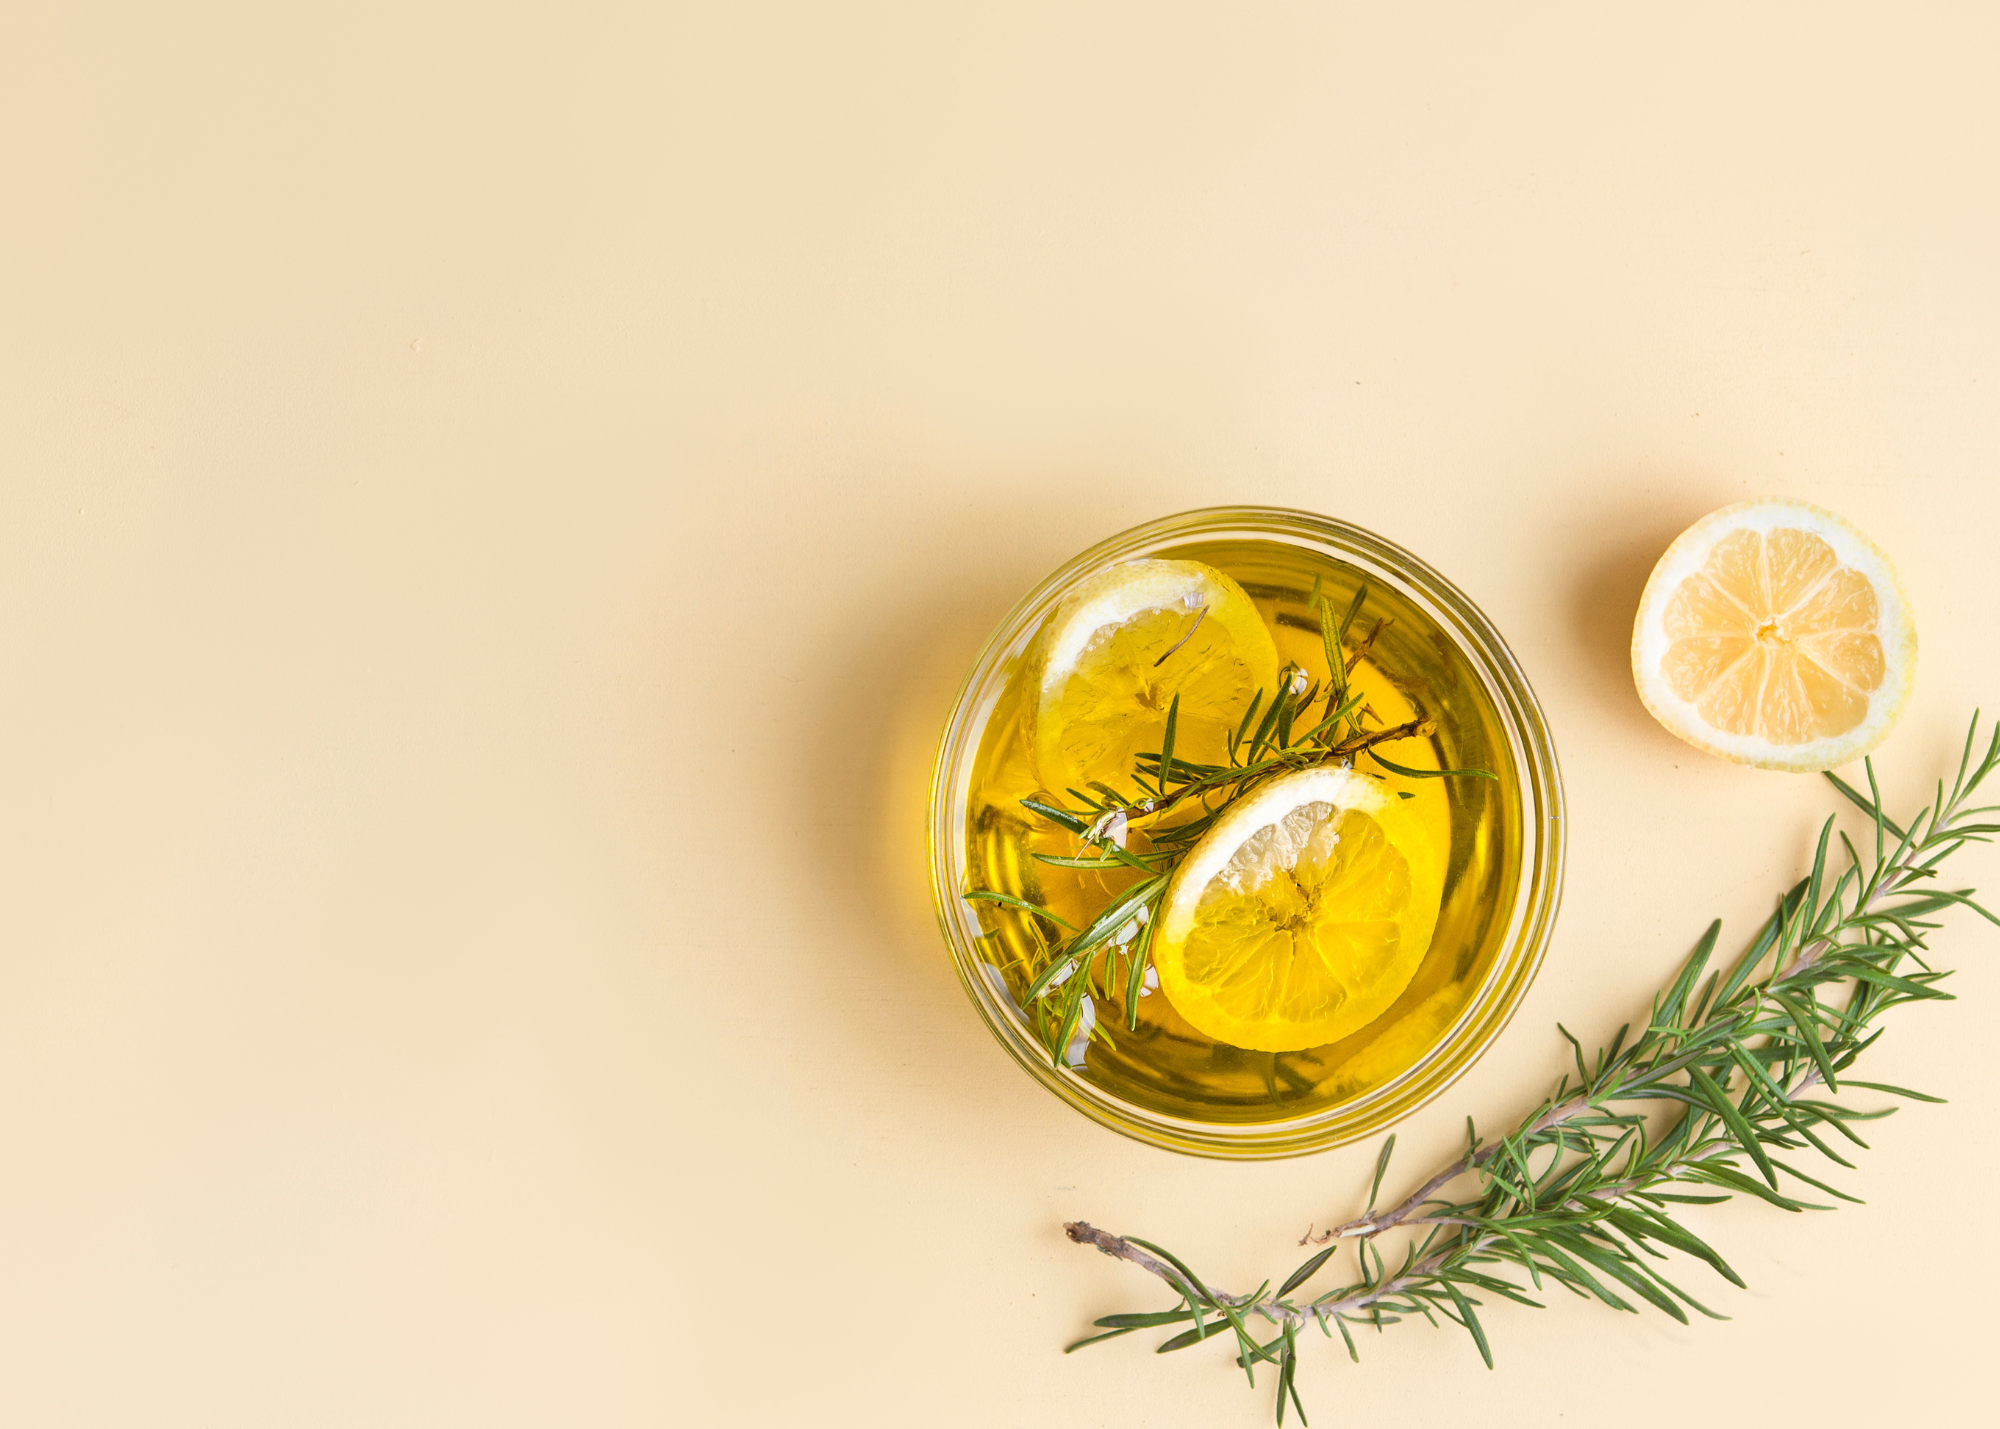 Meyer lemon olive oil